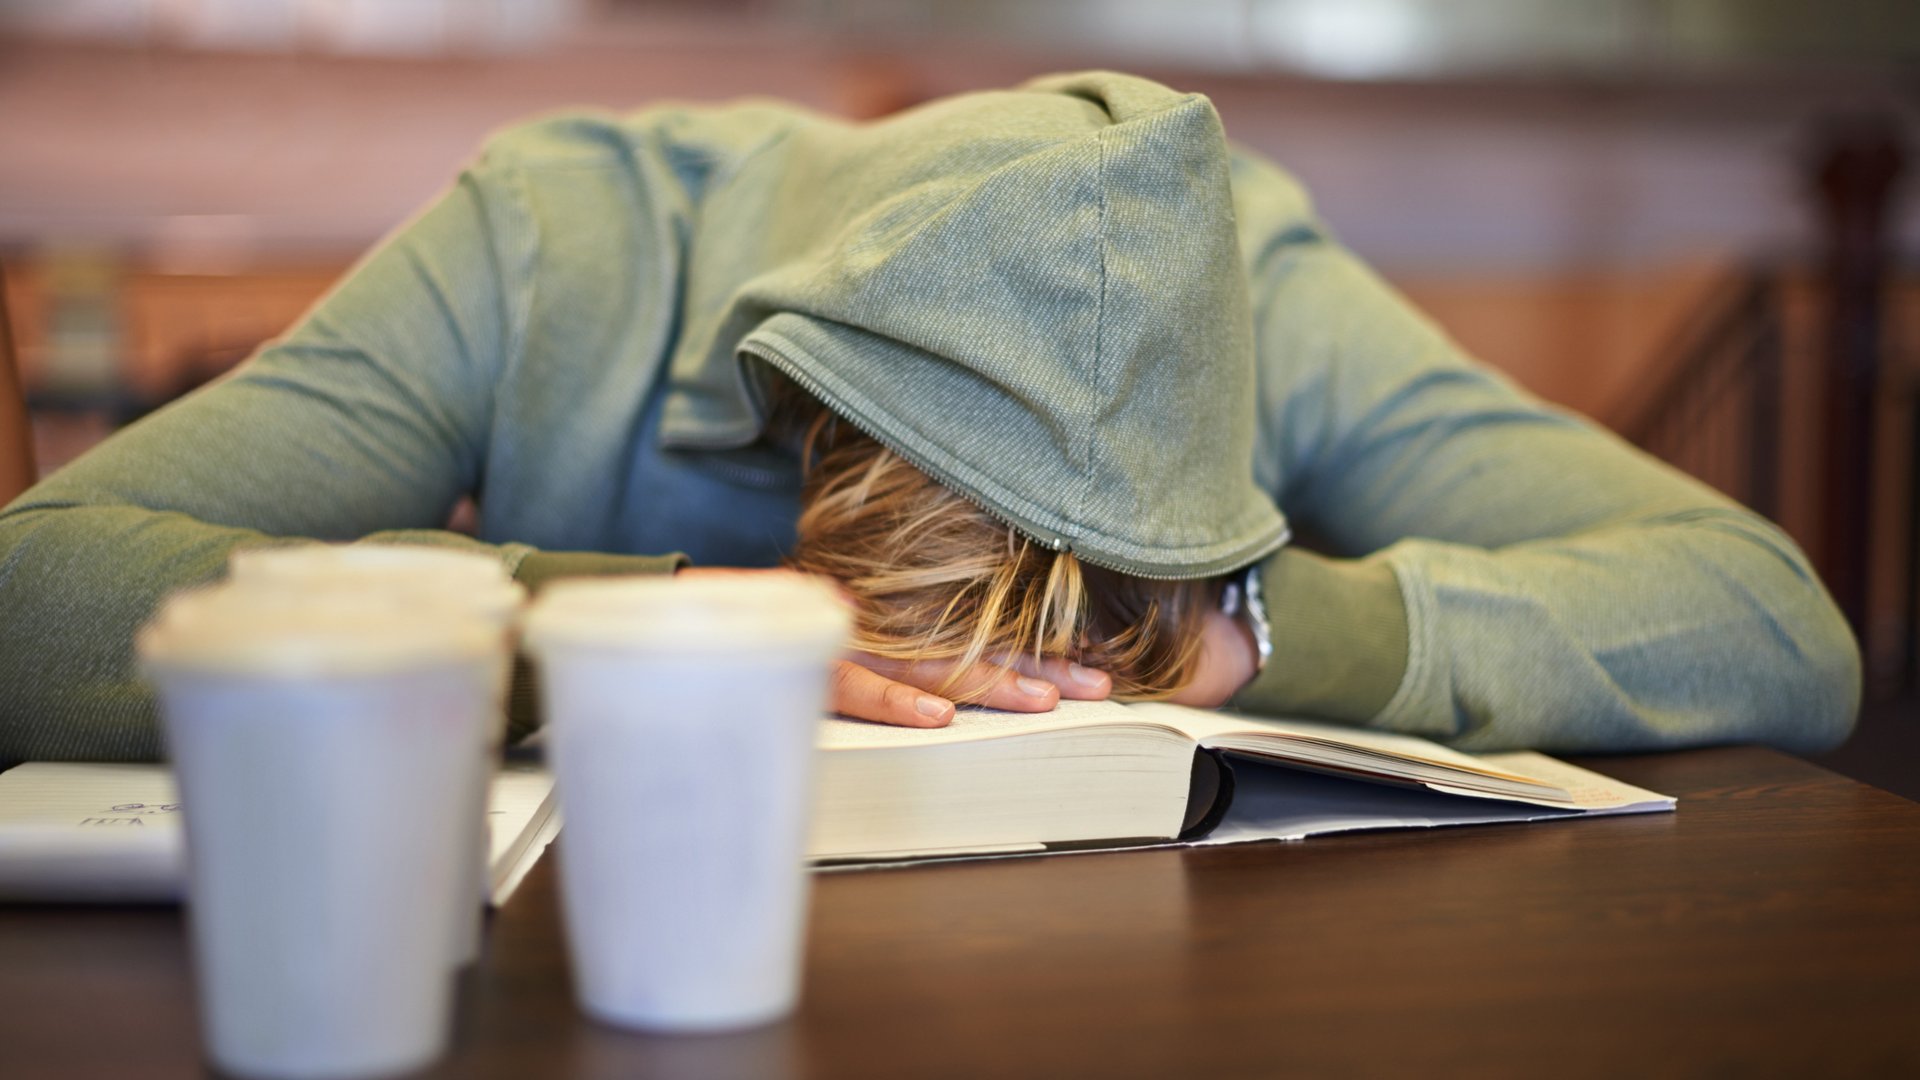 En elev i en grå luvtröja somnar i klassen